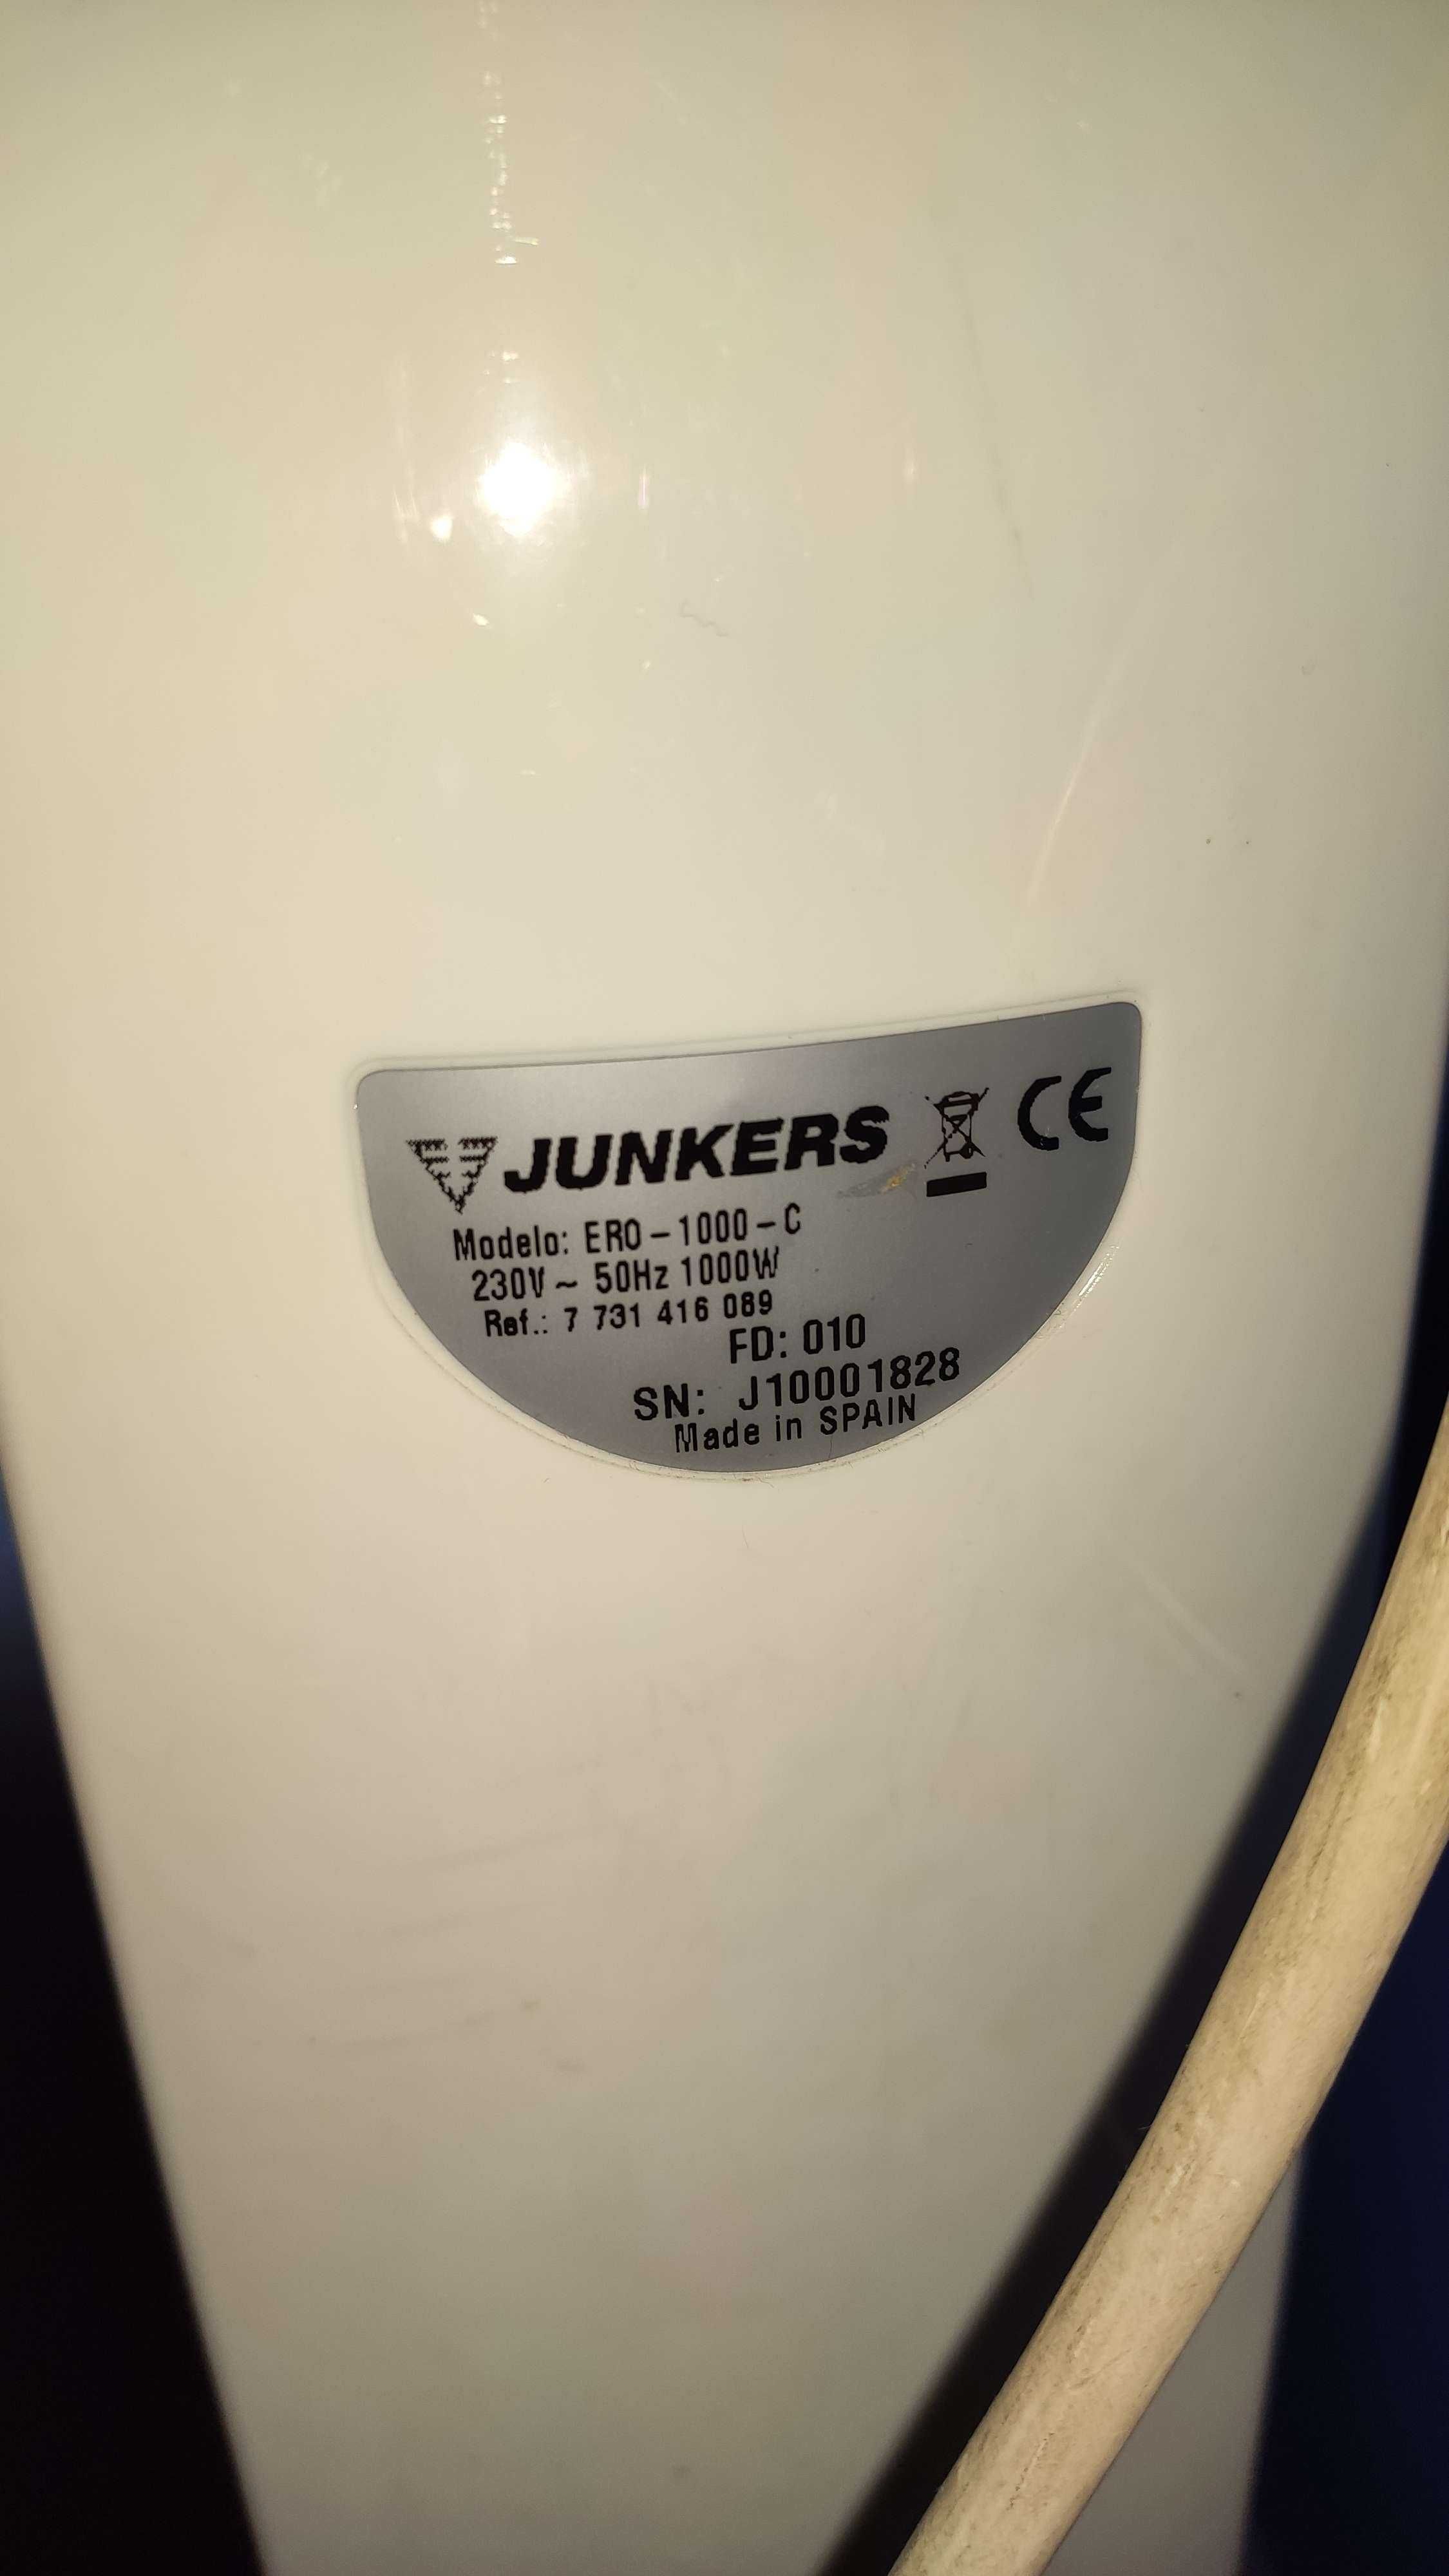 Emissor de calor / aquecedor Junkers 1000w